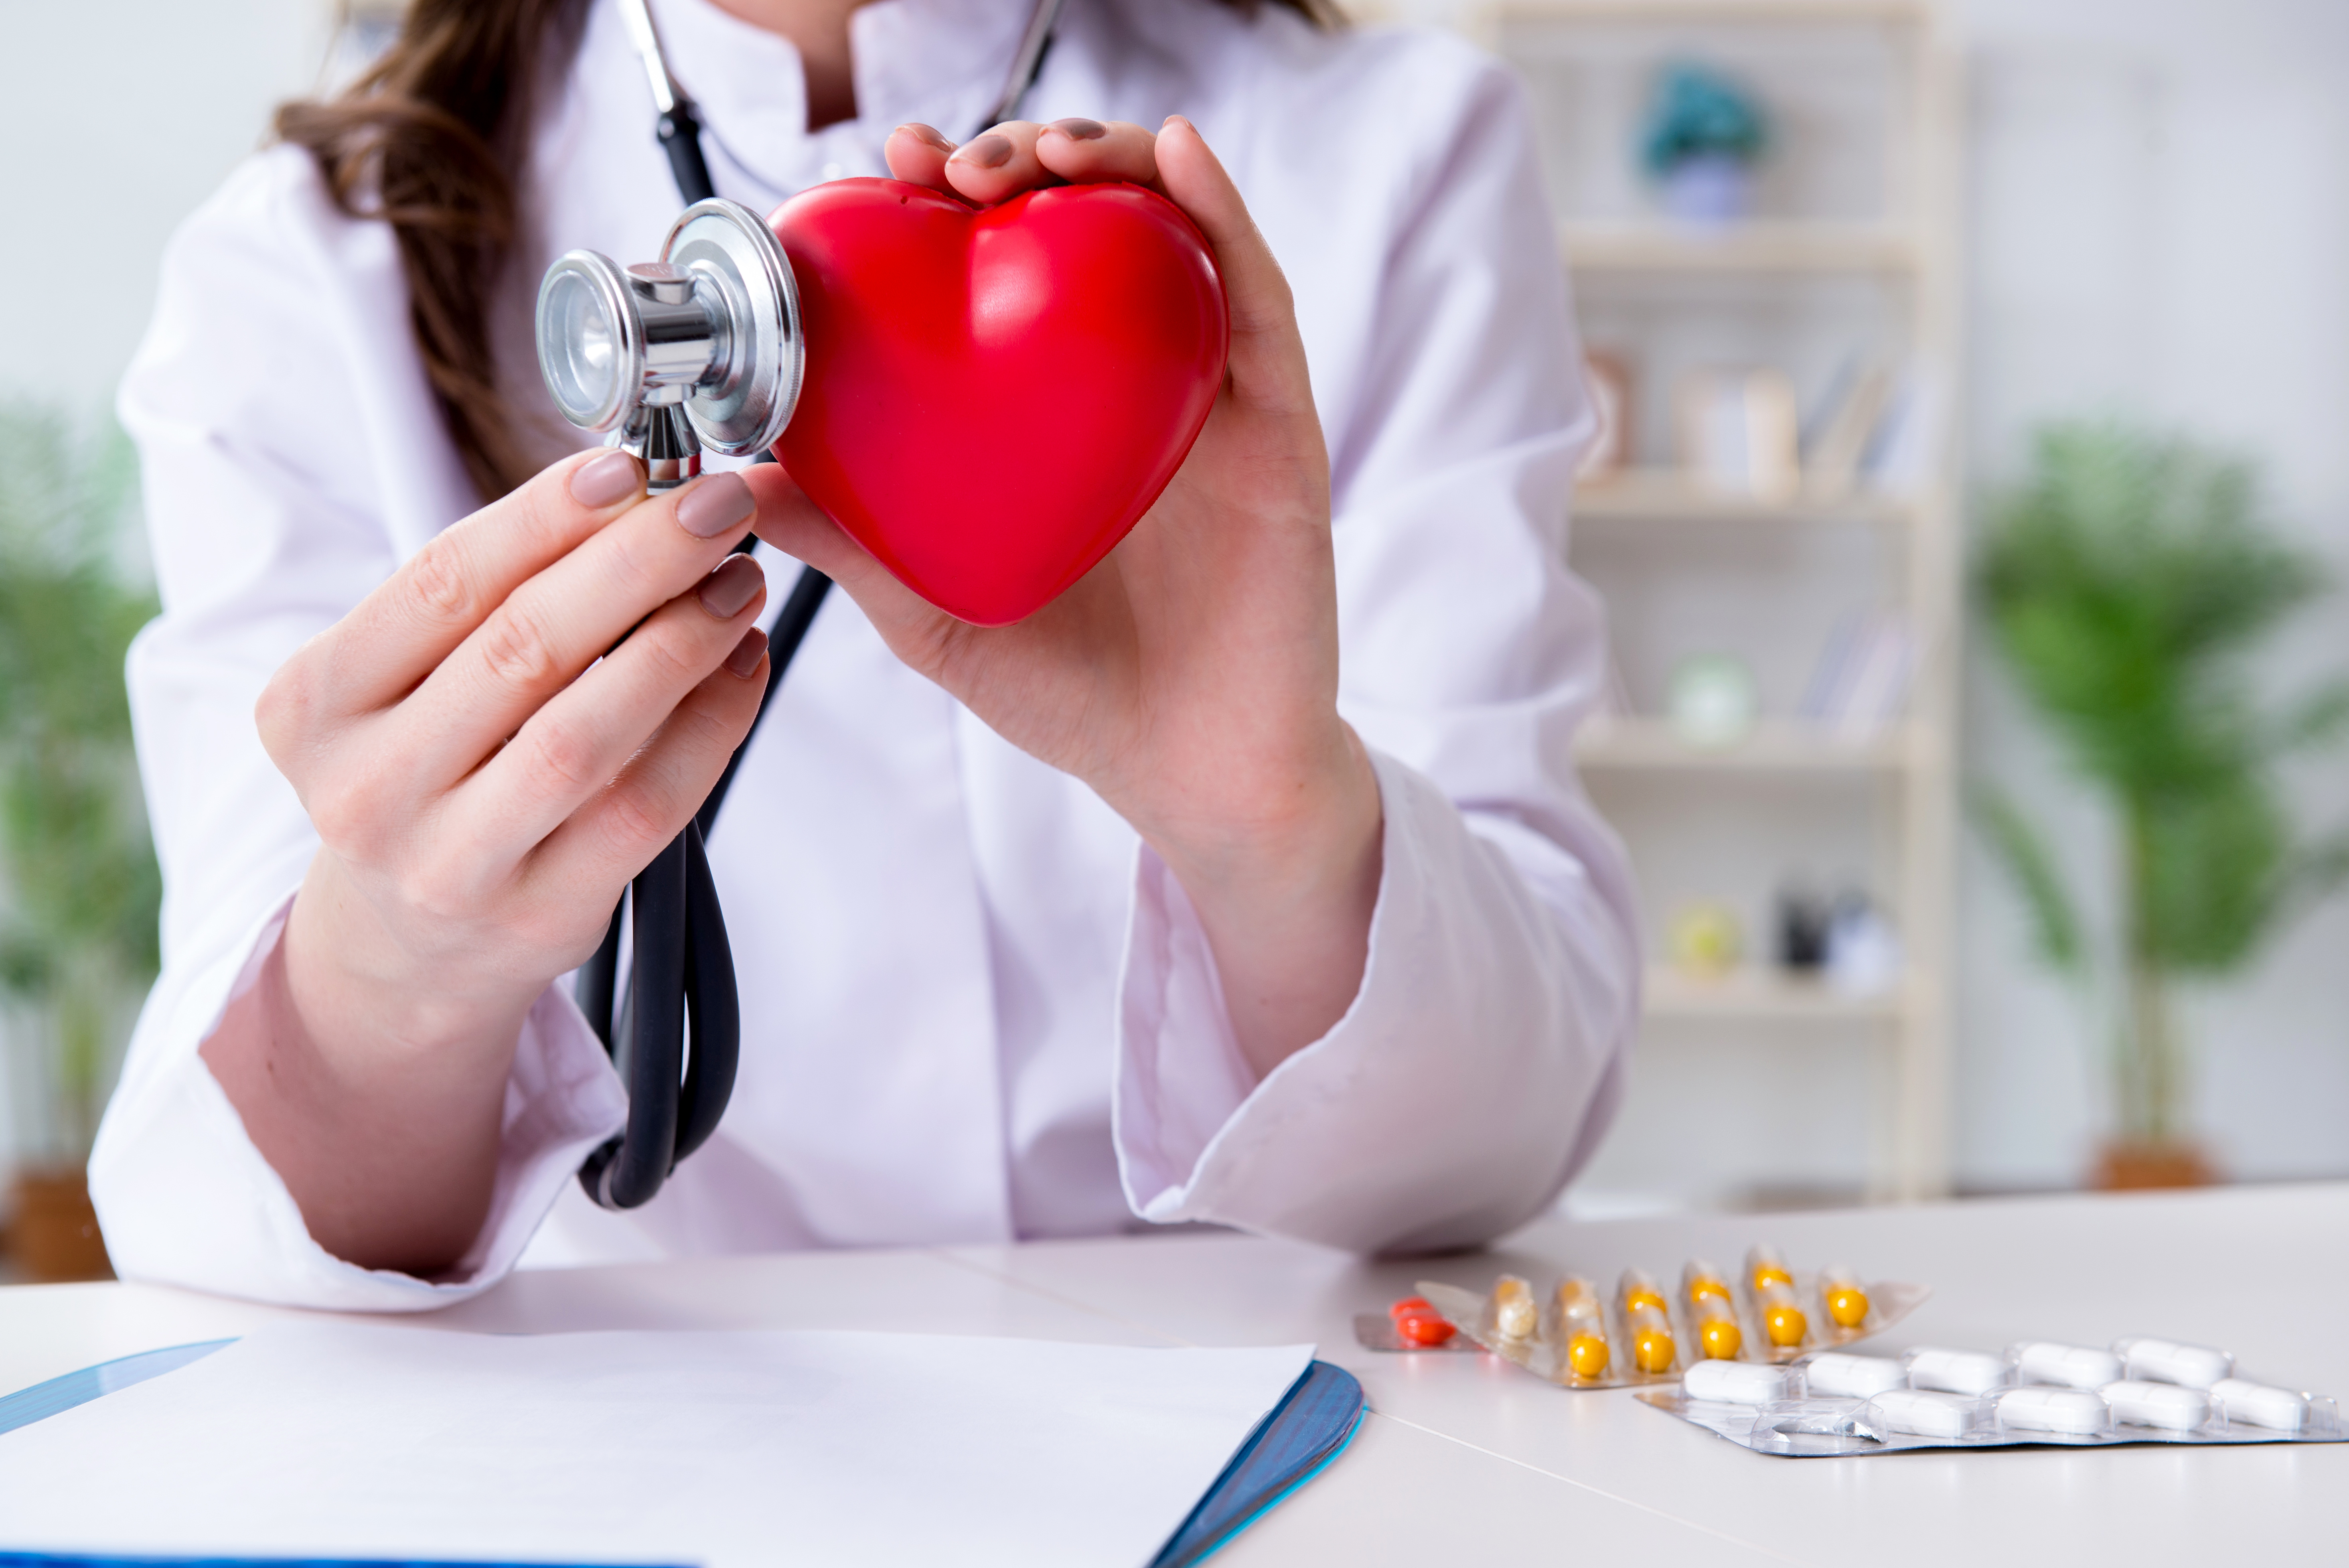 Amiloidosi cardiaca, cambio di paradigma nell’approccio diagnostico-terapeutico